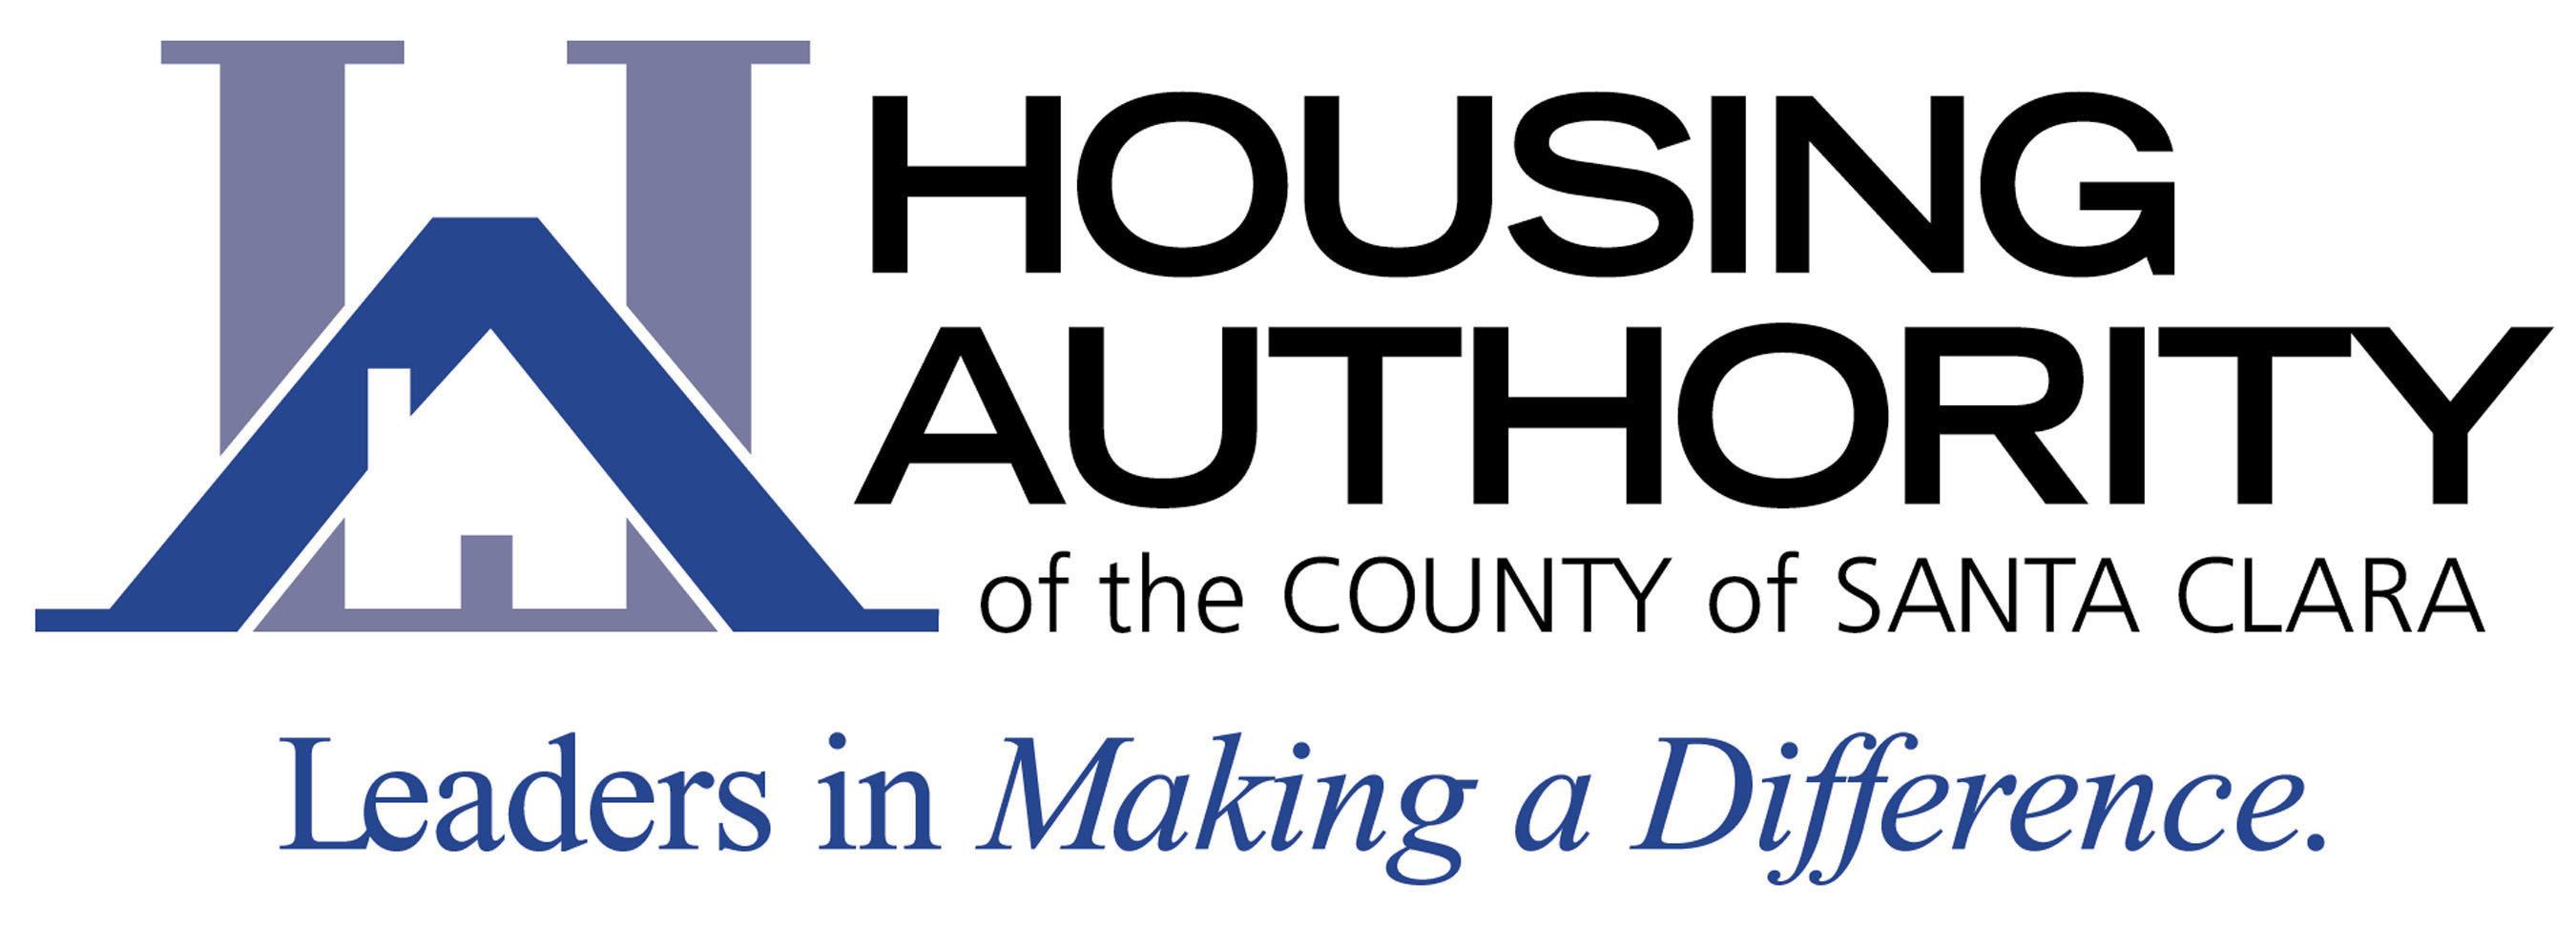 Housing Authority of the County of Santa Clara Logo.